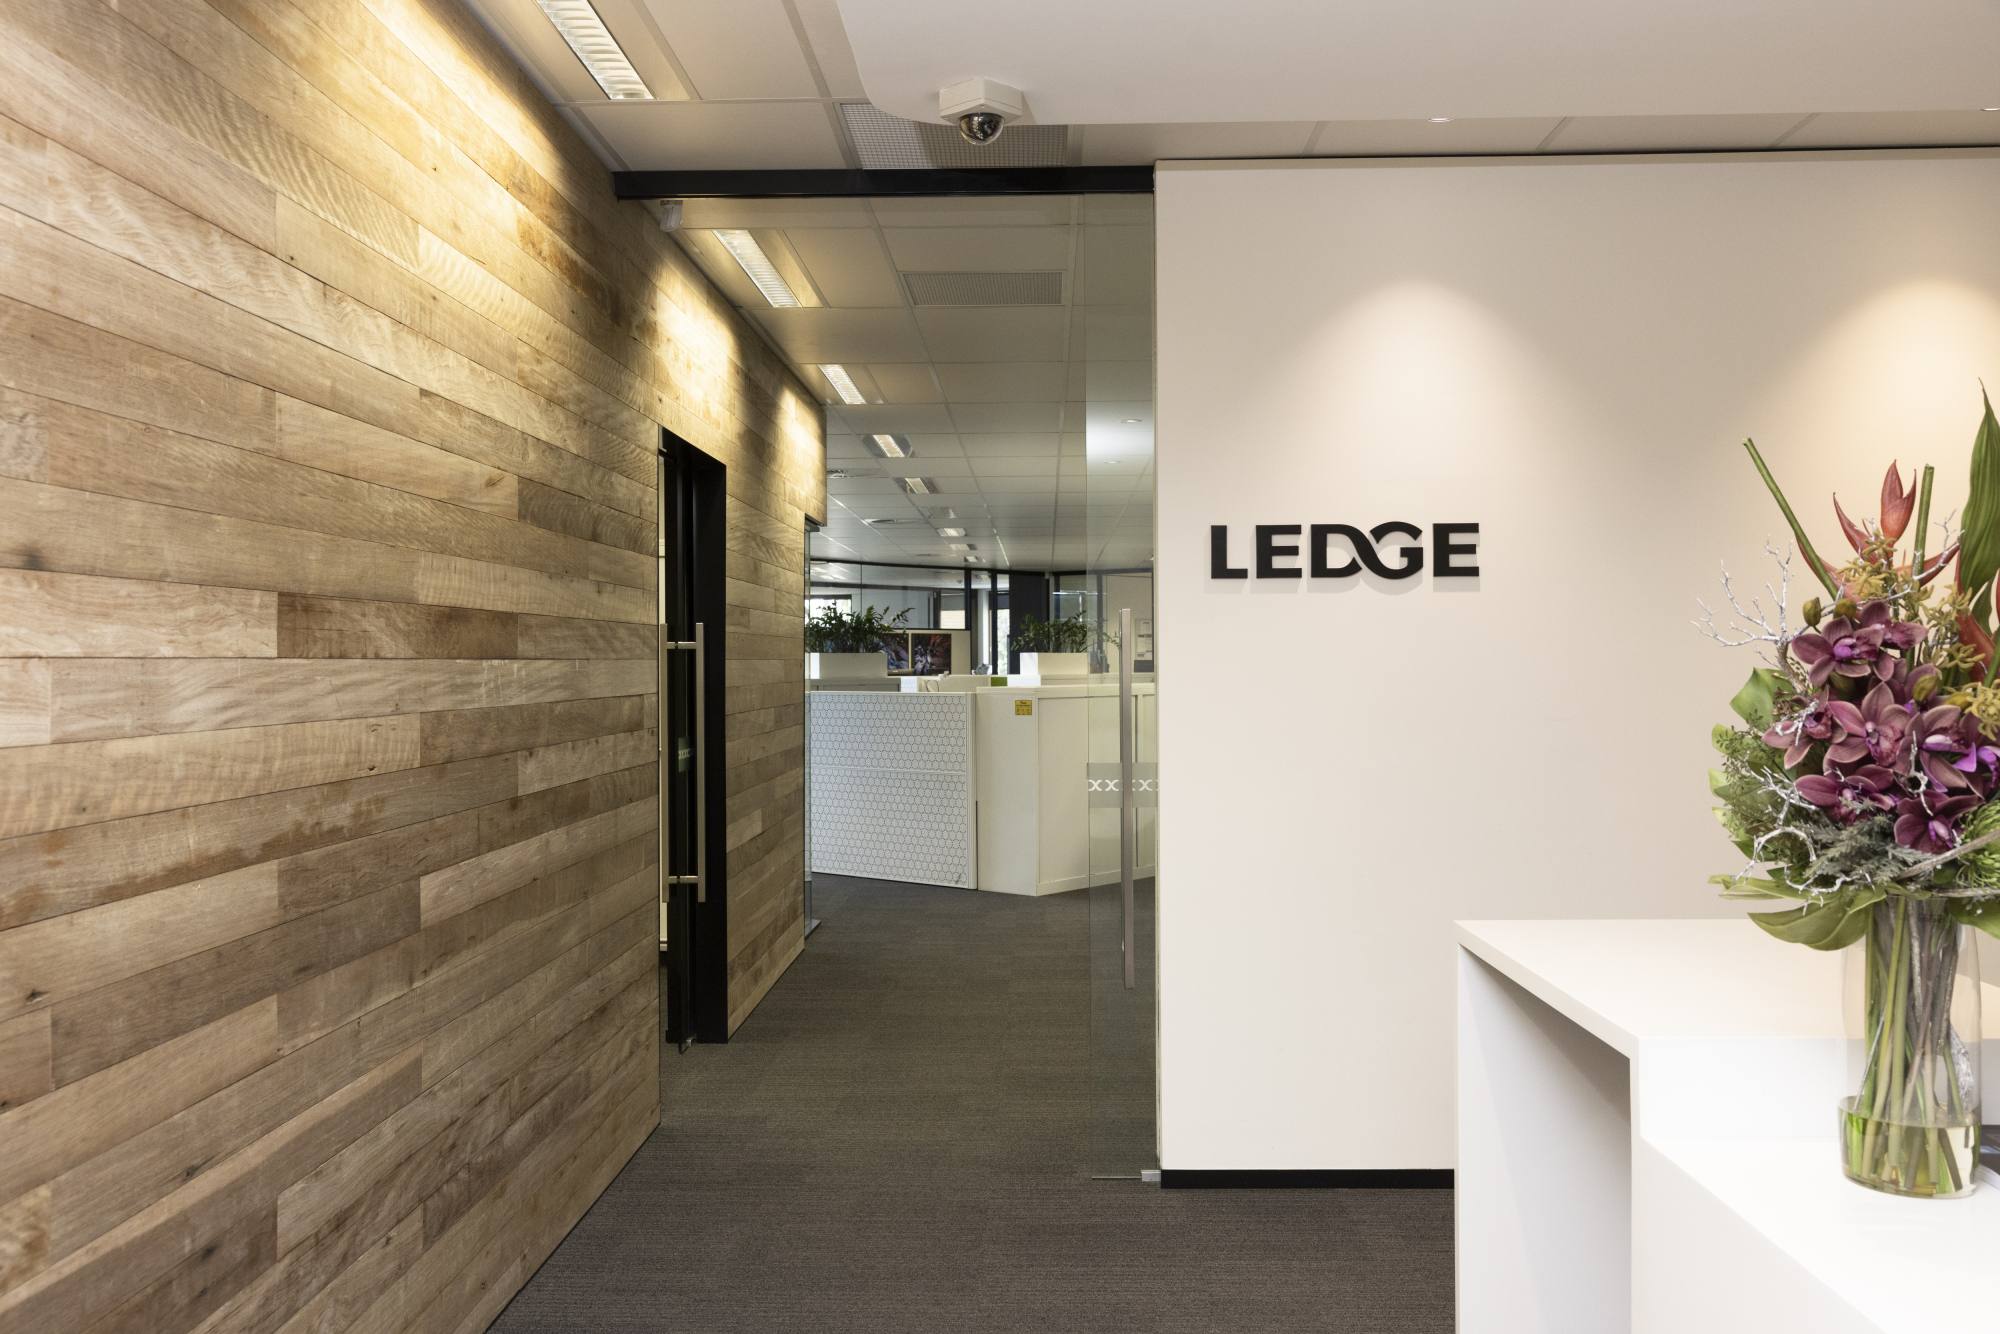 Ledge Finance office foyer.